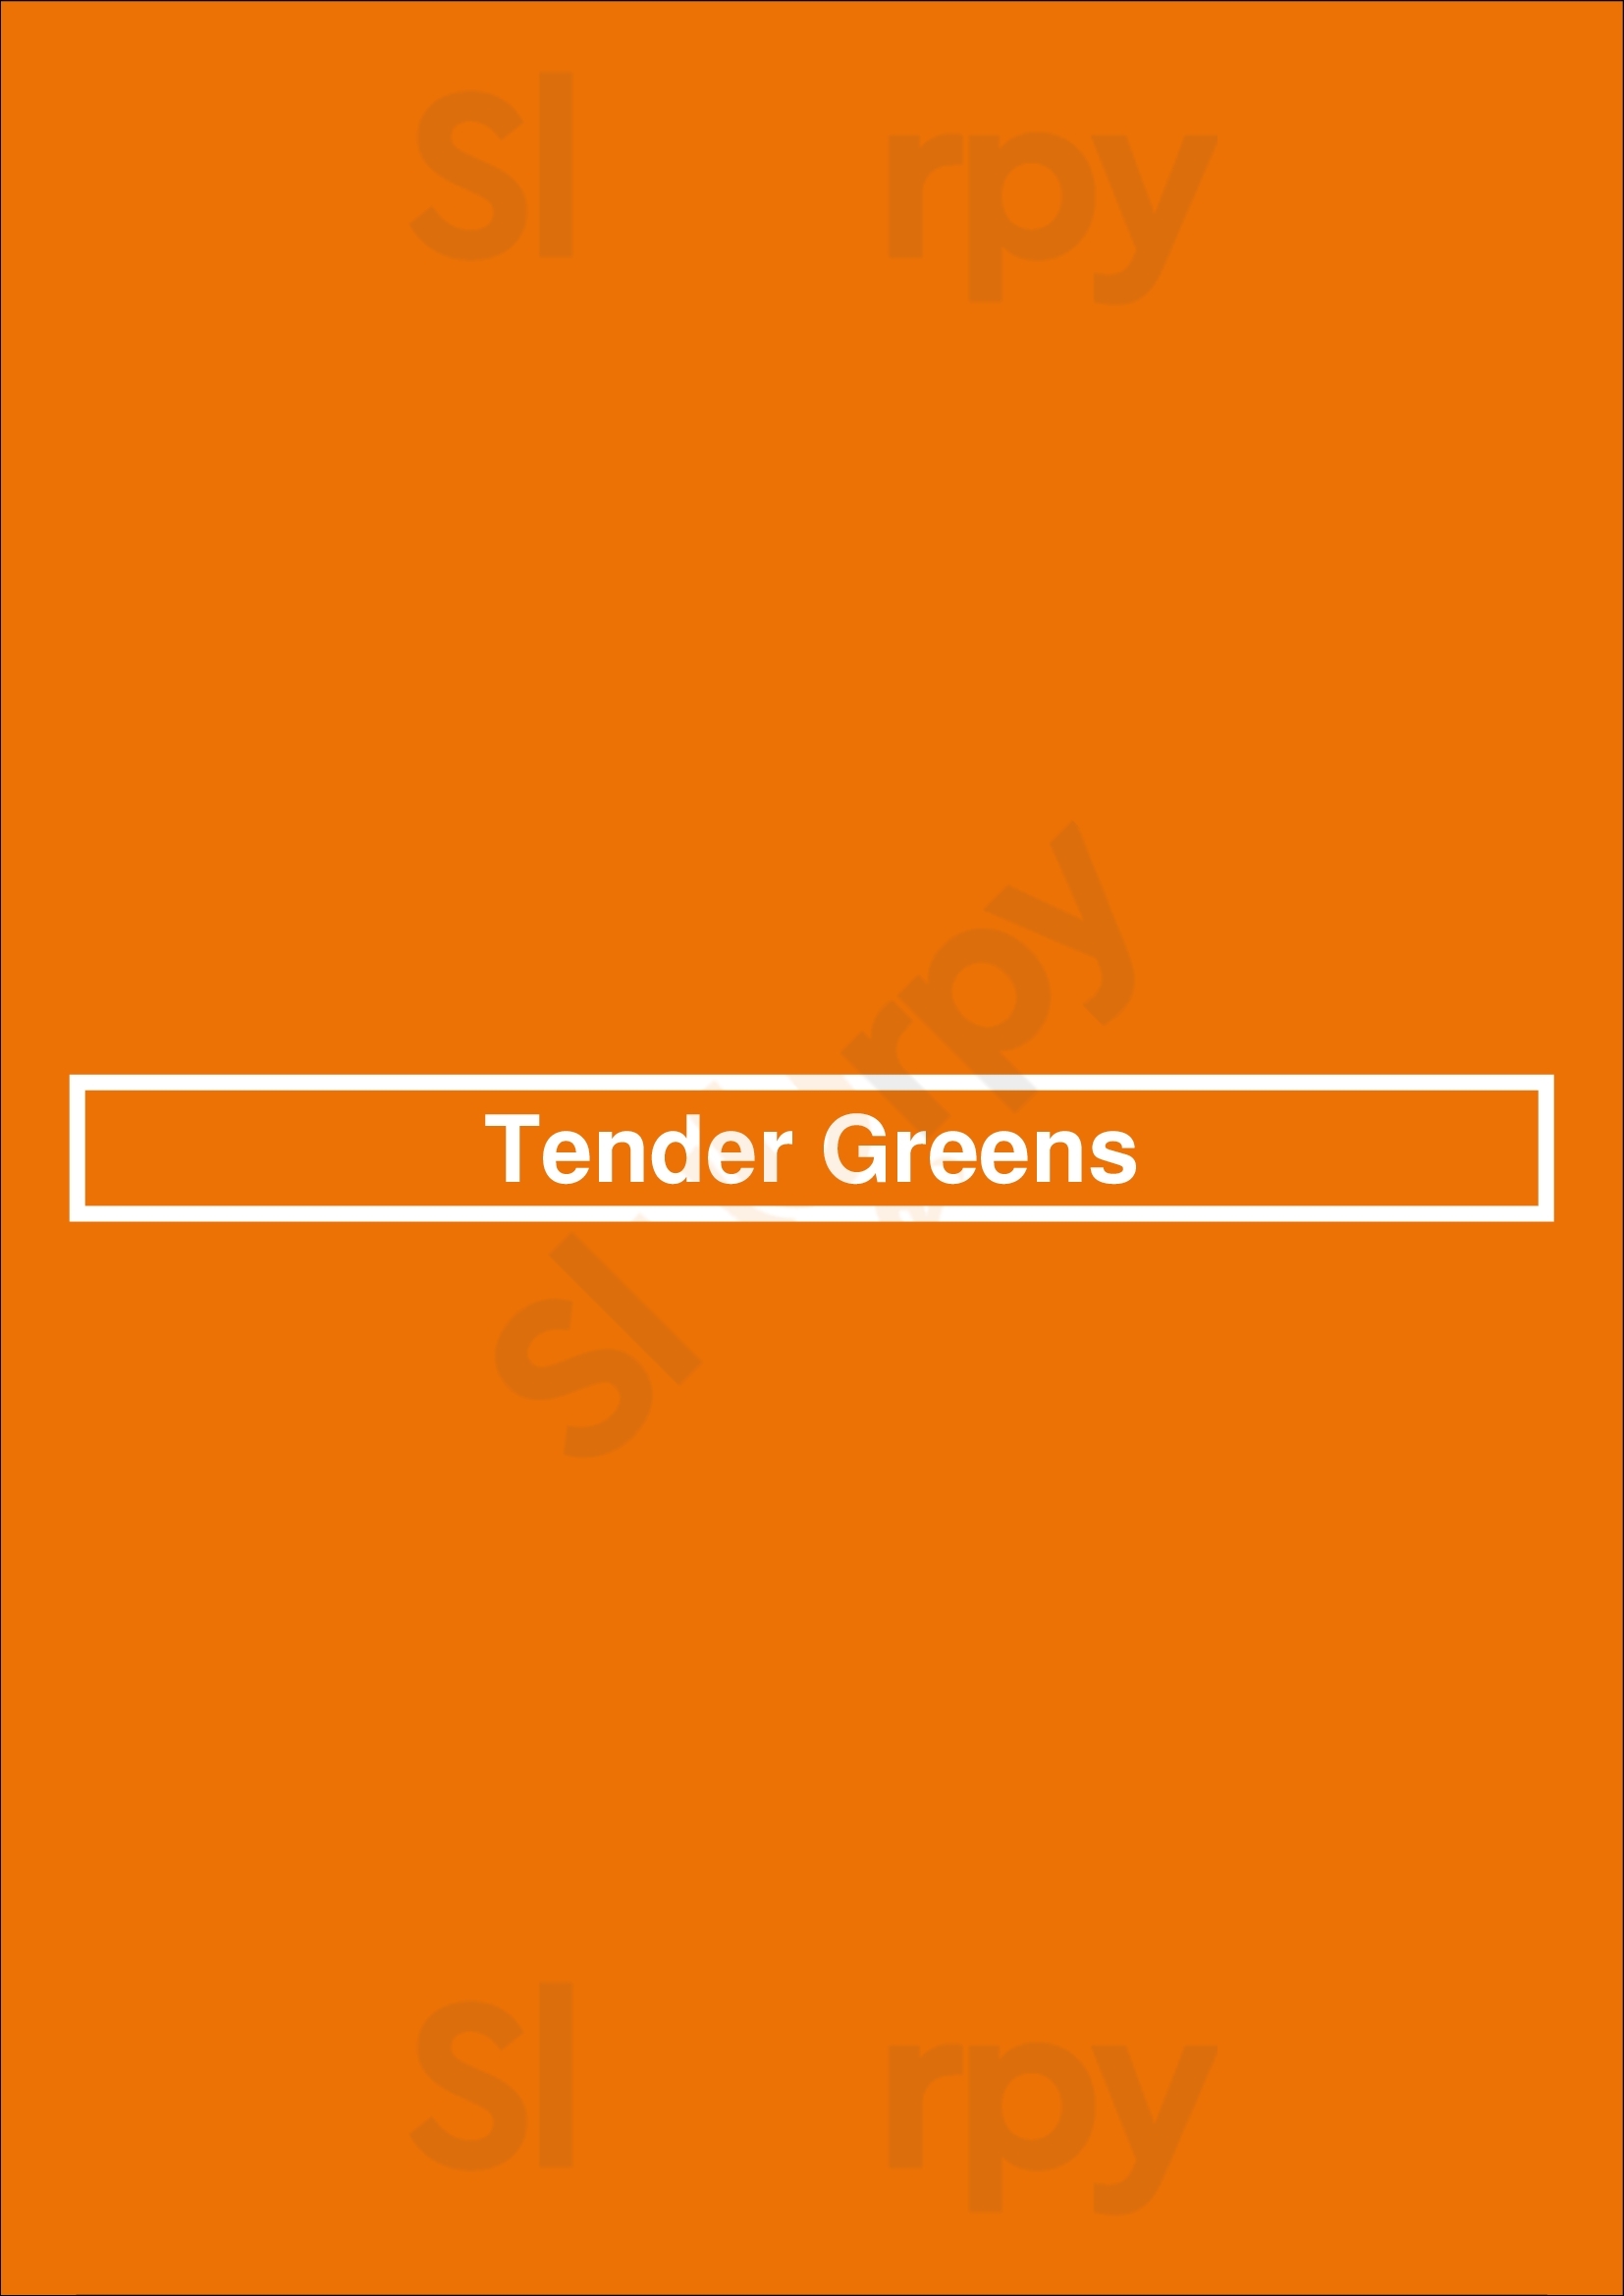 Tender Greens Los Angeles Menu - 1